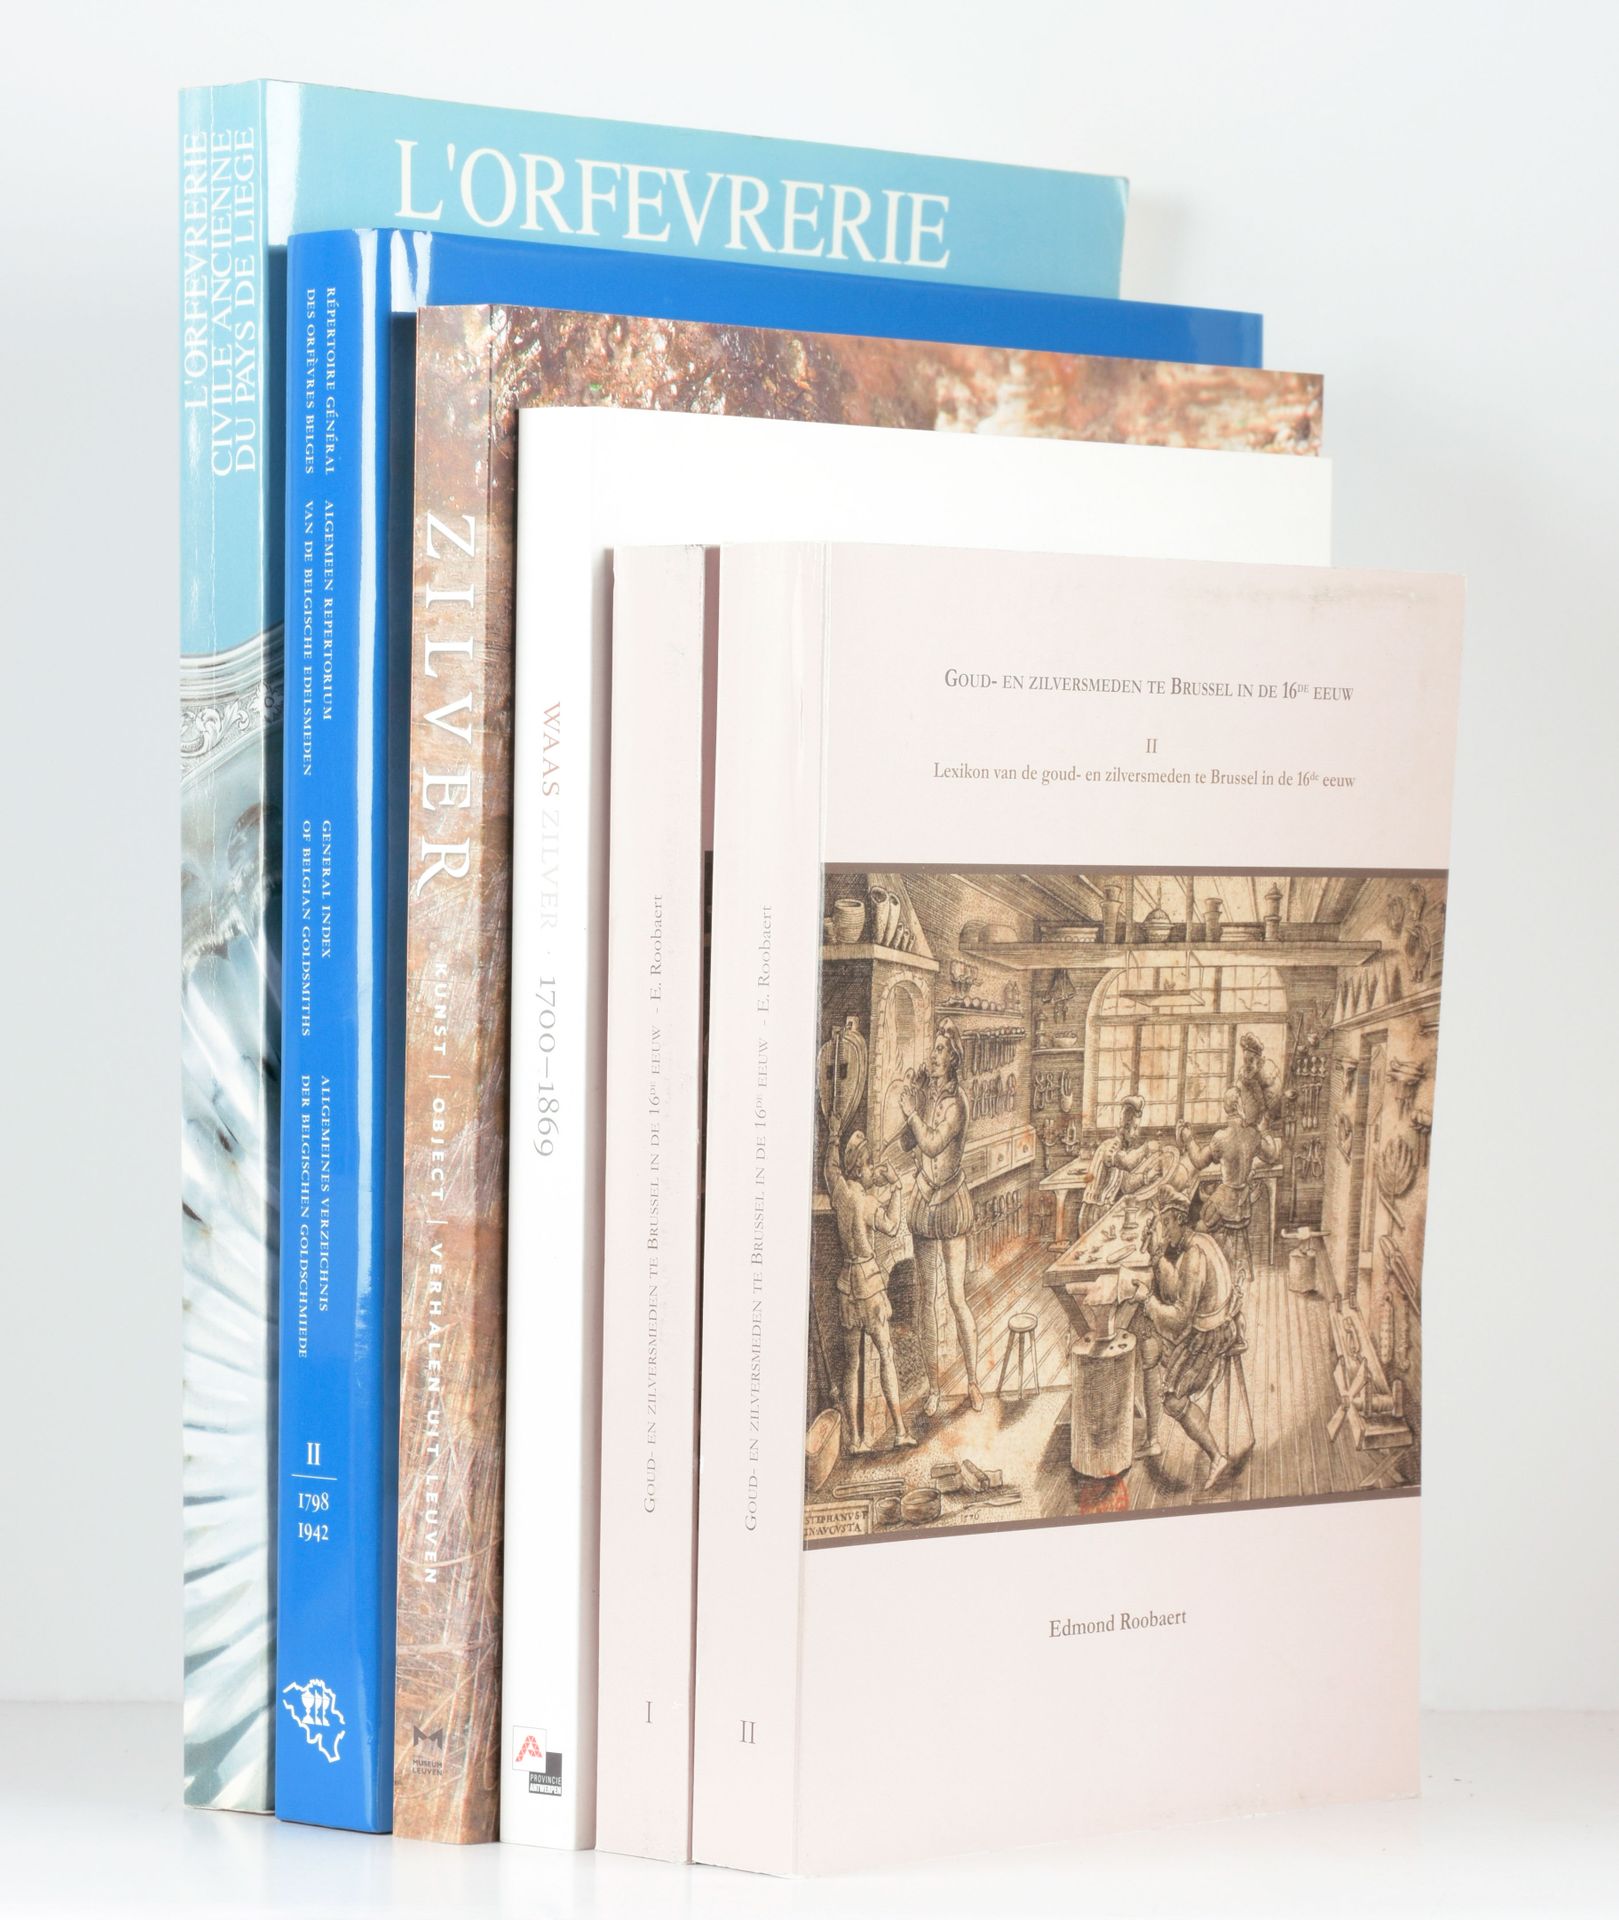 ROOBAERT, Edmond Goud- en zilversmeden te Brussel in de 16de eeuw

2 vol. In-4°,&hellip;